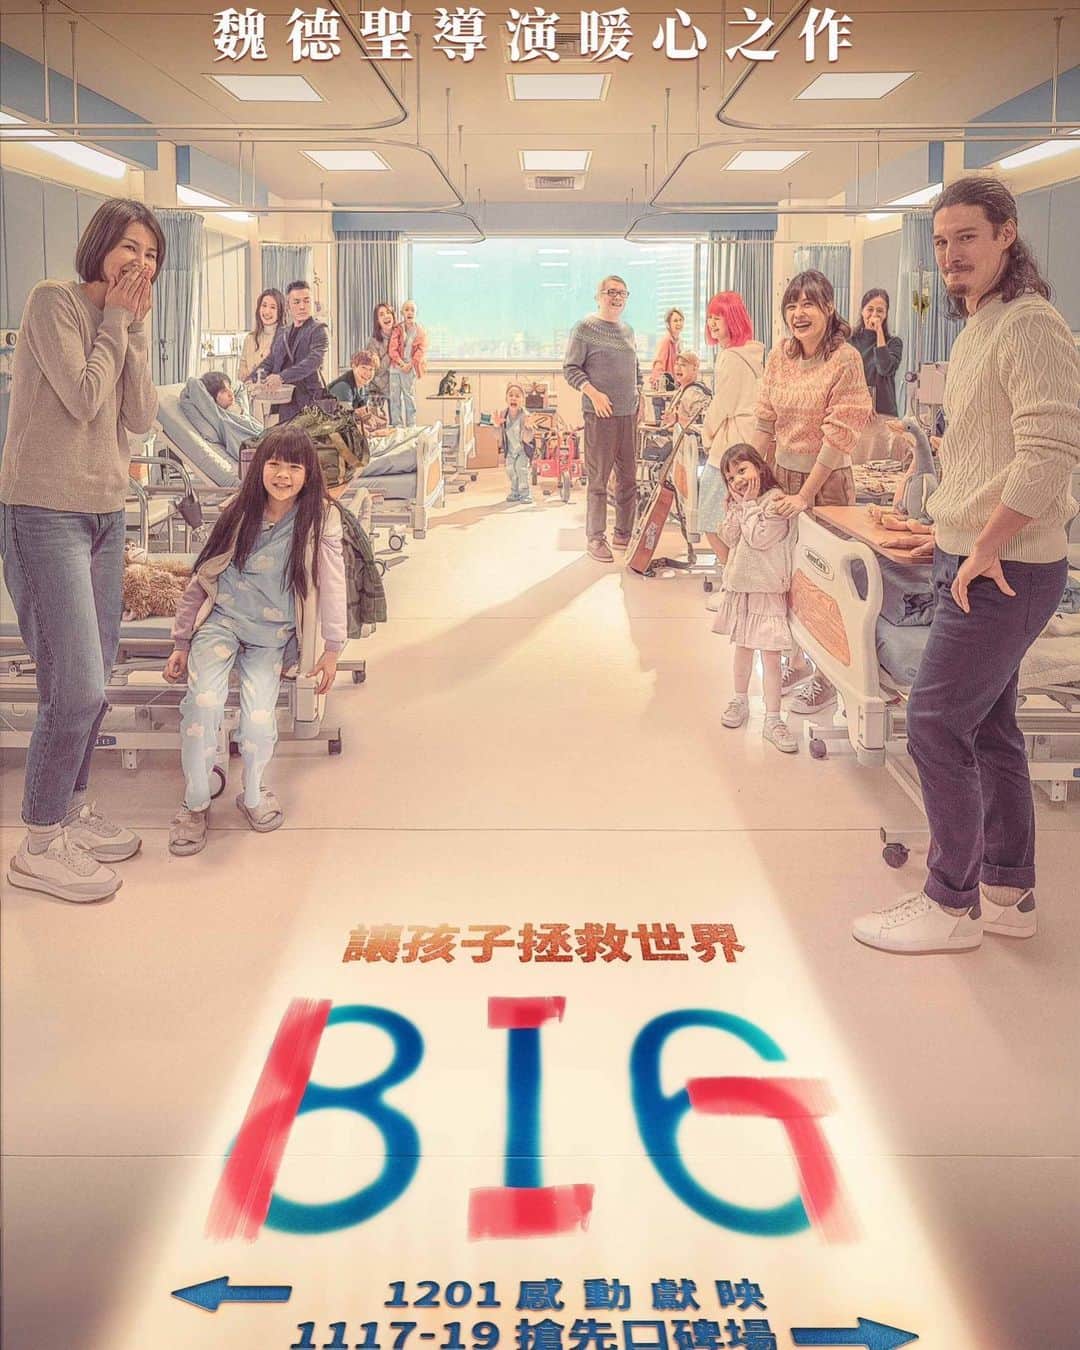 田中千絵のインスタグラム：「💙816《BIG》💙  今日、『BIG』の新しいポスターが お披露目されました👏🏻👏🏻👏🏻  暖かい色調で描かれたこのポスター 一目見た時から大好きになりました！ でも『BIG』のストーリーを すでに知っている身としては 同時に少し泣きたくなるような衝動もあるというか⋯ (映画が公開になった後、 みなさんにもきっとわかってもらえると思います🥹)  816号病室では 毎日いろいろなことが起き 楽しいことばかりではないかもしれないけど 小児癌を患っている子供たちとその家族にとって 毎日迎える朝日を見られることが 神様から与えられた最大の祝福。 まさに”Being Is Gift”です🎁  12/1から台湾で公開になります。 もう少し先ですが、ぜひよろしくお願いします！ . #bigbeingisgift . 816《BIG》新海報今天出爐了~👏🏻👏🏻👏🏻 溫馨暖色的色調讓我一見鍾情，真的好好看喔！ 但已經知道《BIG》故事的我來說 也會有一種想哭的感覺⋯ (我相信到時候大家看完電影應該會懂我說的意思🥹)  816病房裡每天發生很多的點點滴滴 雖然不是每件事情都這麼的開心 但是對於兒癌病童和他們的家人來說 每天的到來就是老天爺給予他們生命的祝福 ”Being Is Gift”🎁🎁🎁 活著就是最大的禮物！  12/1全台上映！請大家多多支持！！  816《BIG》大家庭海報發布啦❗️ ＿＿我們住在816，歡笑與勇敢是我們的日常💪＿＿  監  製｜徐國倫 導  演｜魏德聖  編  劇｜魏德聖  蔡顗禾 出  品｜築間餐飲集團  大誠保險經紀人股份有限公司  泰豐禮品美術有限公司 製  作｜米倉影業股份有限公司 發  行｜美商索尼影業台灣分公司 主  演｜鄭又菲  曾沛慈  陳博正  郭大睿  田中千繪  范逸臣  黃之諾  夏宇童  周厚安  謝以樂  曾珮瑜  黃鐙輝  于卉喬  黃采儀  王夢麟  滕韋煦  李佳豫  賴銘偉  馬志翔  廖慧珍  鄭人碩  贊  助｜泰歐視鏡片  全家便利商店股份有限公司  沛爾生技醫藥股份有限公司  旺默食品企業有限公司  816《#BIG》 「不同背景的六個家庭，在兒癌病房中一起經歷的酸甜苦辣」  12.1 感動獻映❤️ 11.17-19 搶先口碑場👍  #816BIG 官網► https://big816.taiwantrilogy.com/ . . #台湾 #台灣 #taiwan  #台湾映画 #台灣電影 #taiwanesefilm  #big #big讓孩子拯救世界  #魏德聖導演  #台北と東京の生活  #中国語」